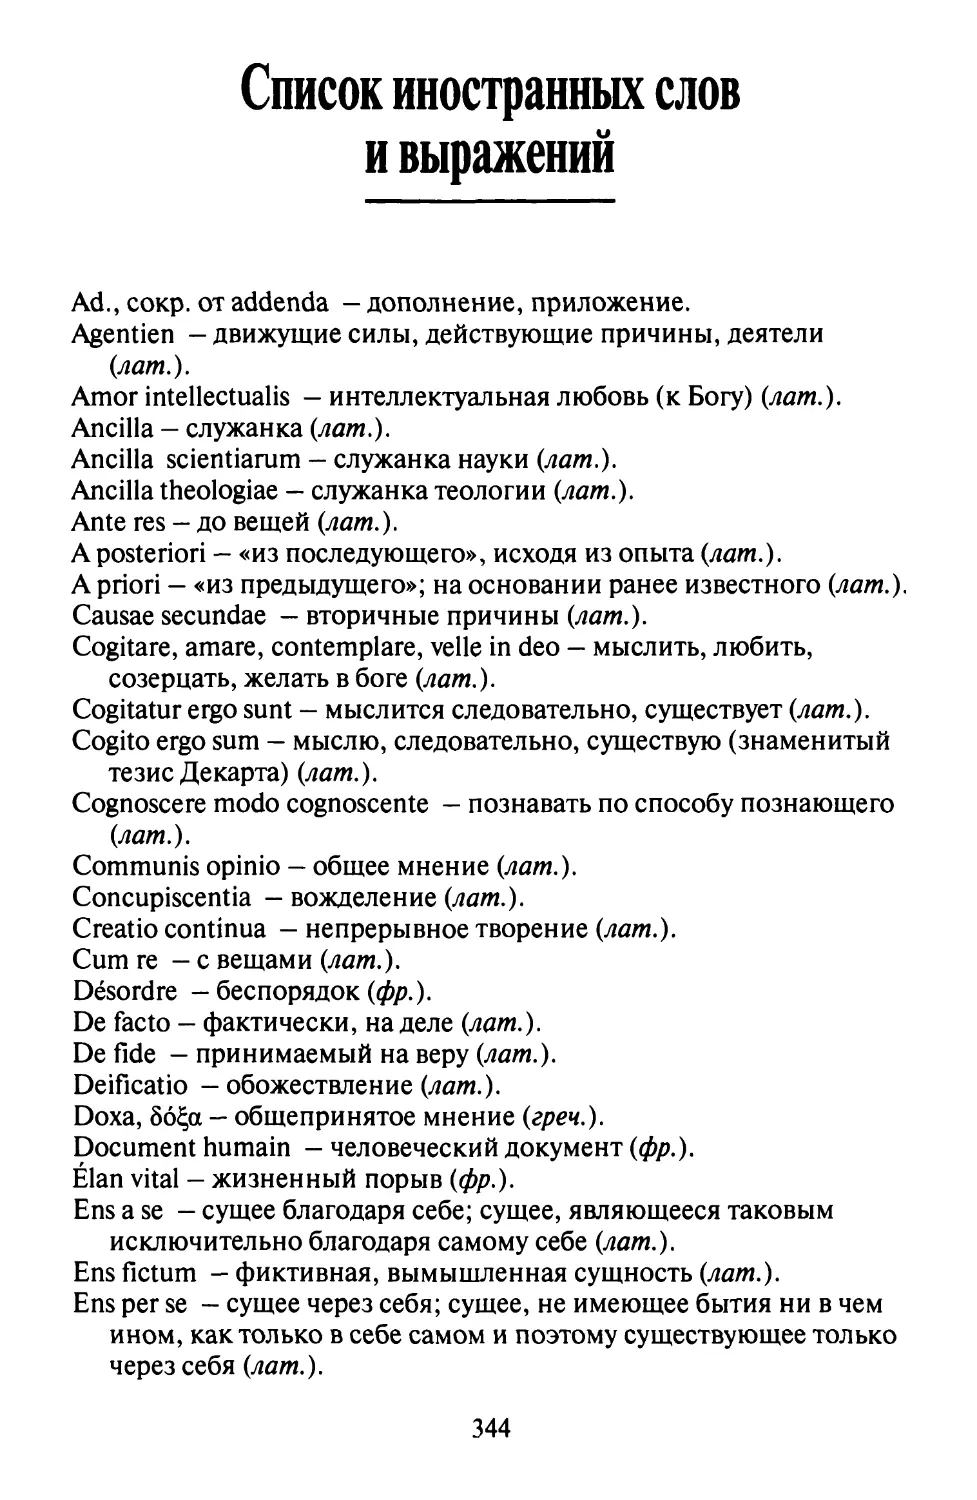 Список иностранных слов и выражений